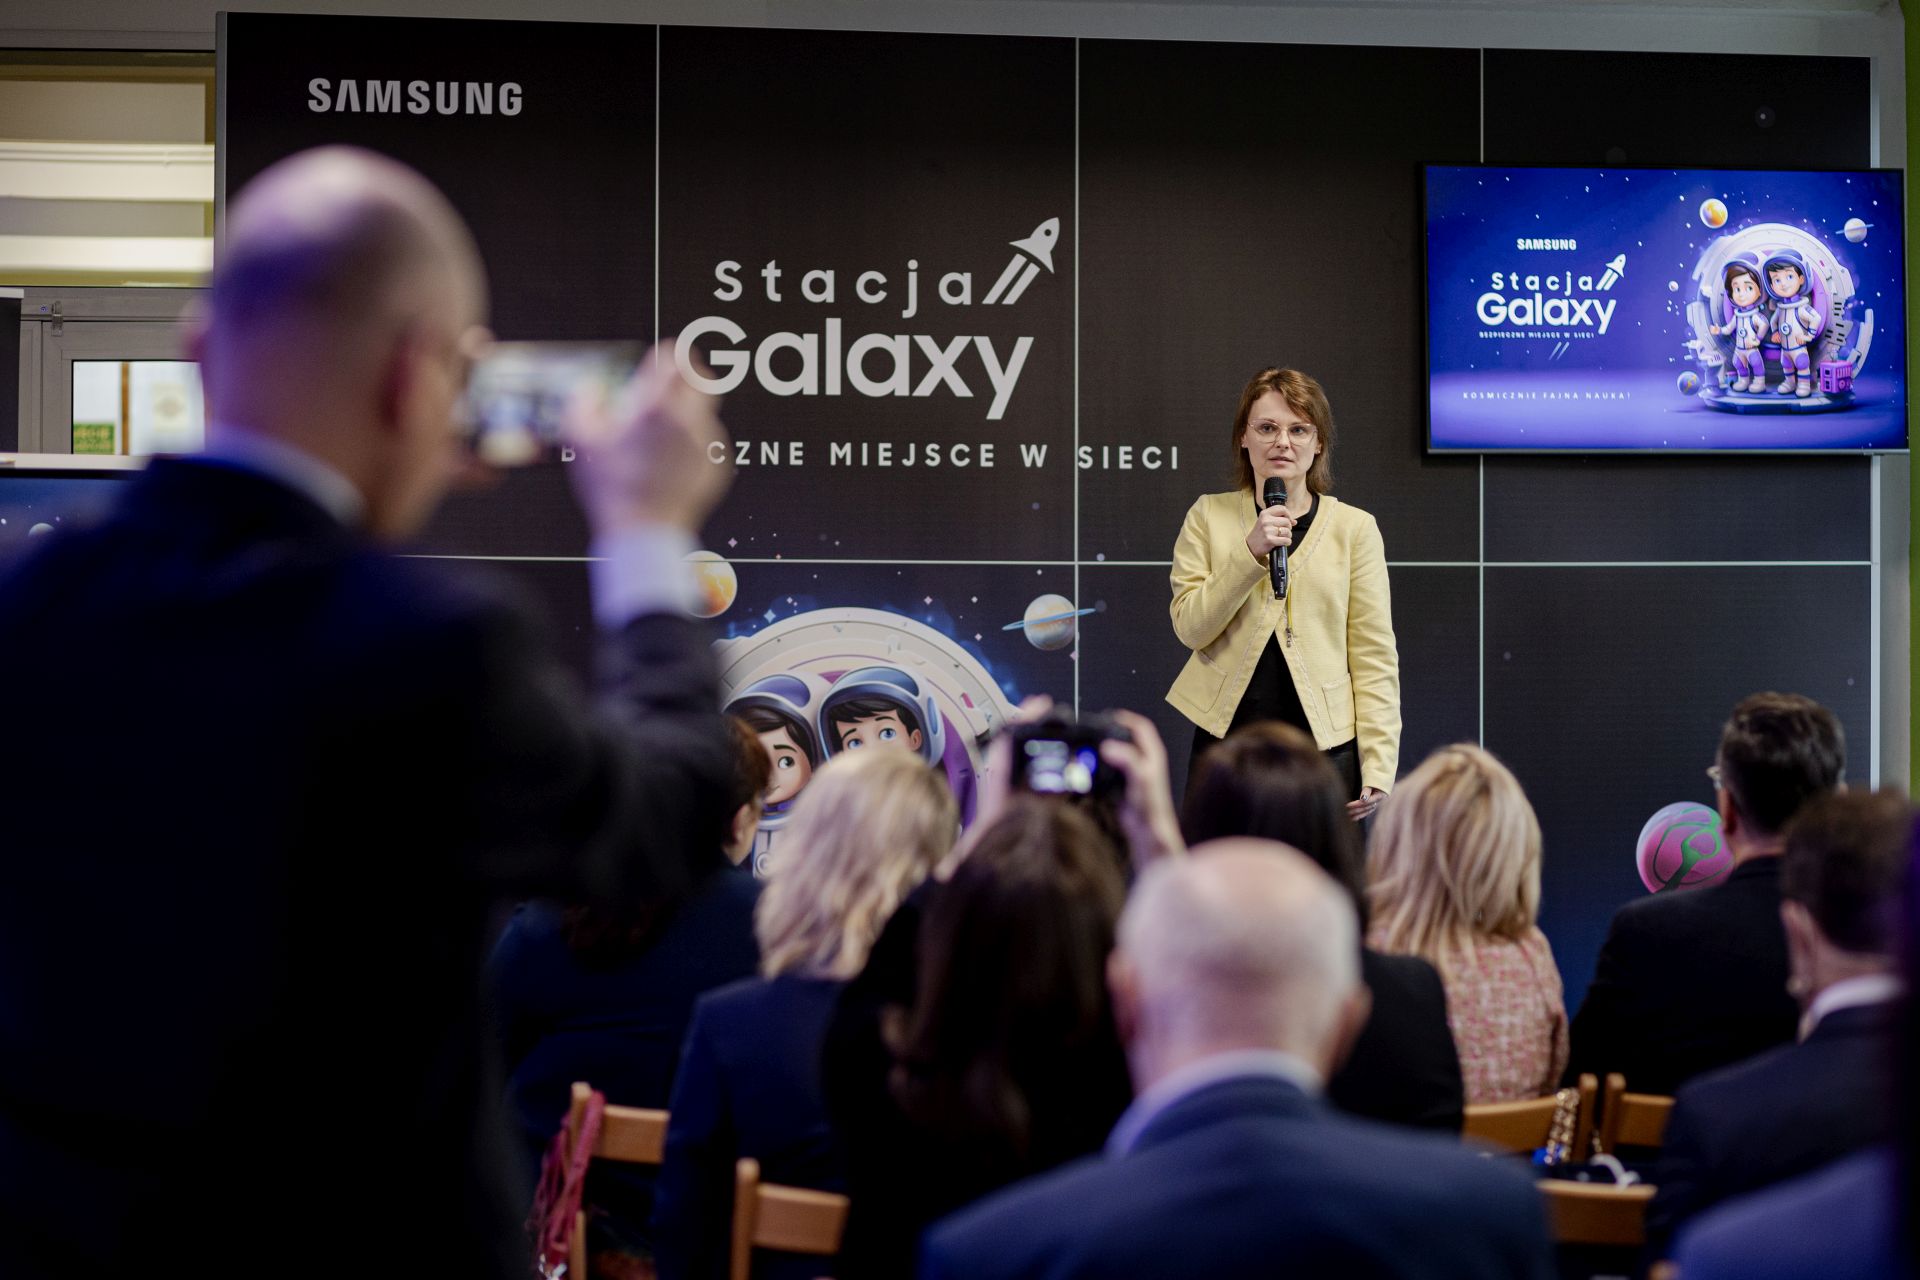 Zdjęcie przedstawiające grupę ludzi na sali. Na scenie elegancko ubrana kobieta z mikrofonem. Na pierwszym planie widownia. W tle ciemna ściana z napisem stacja galaxy.